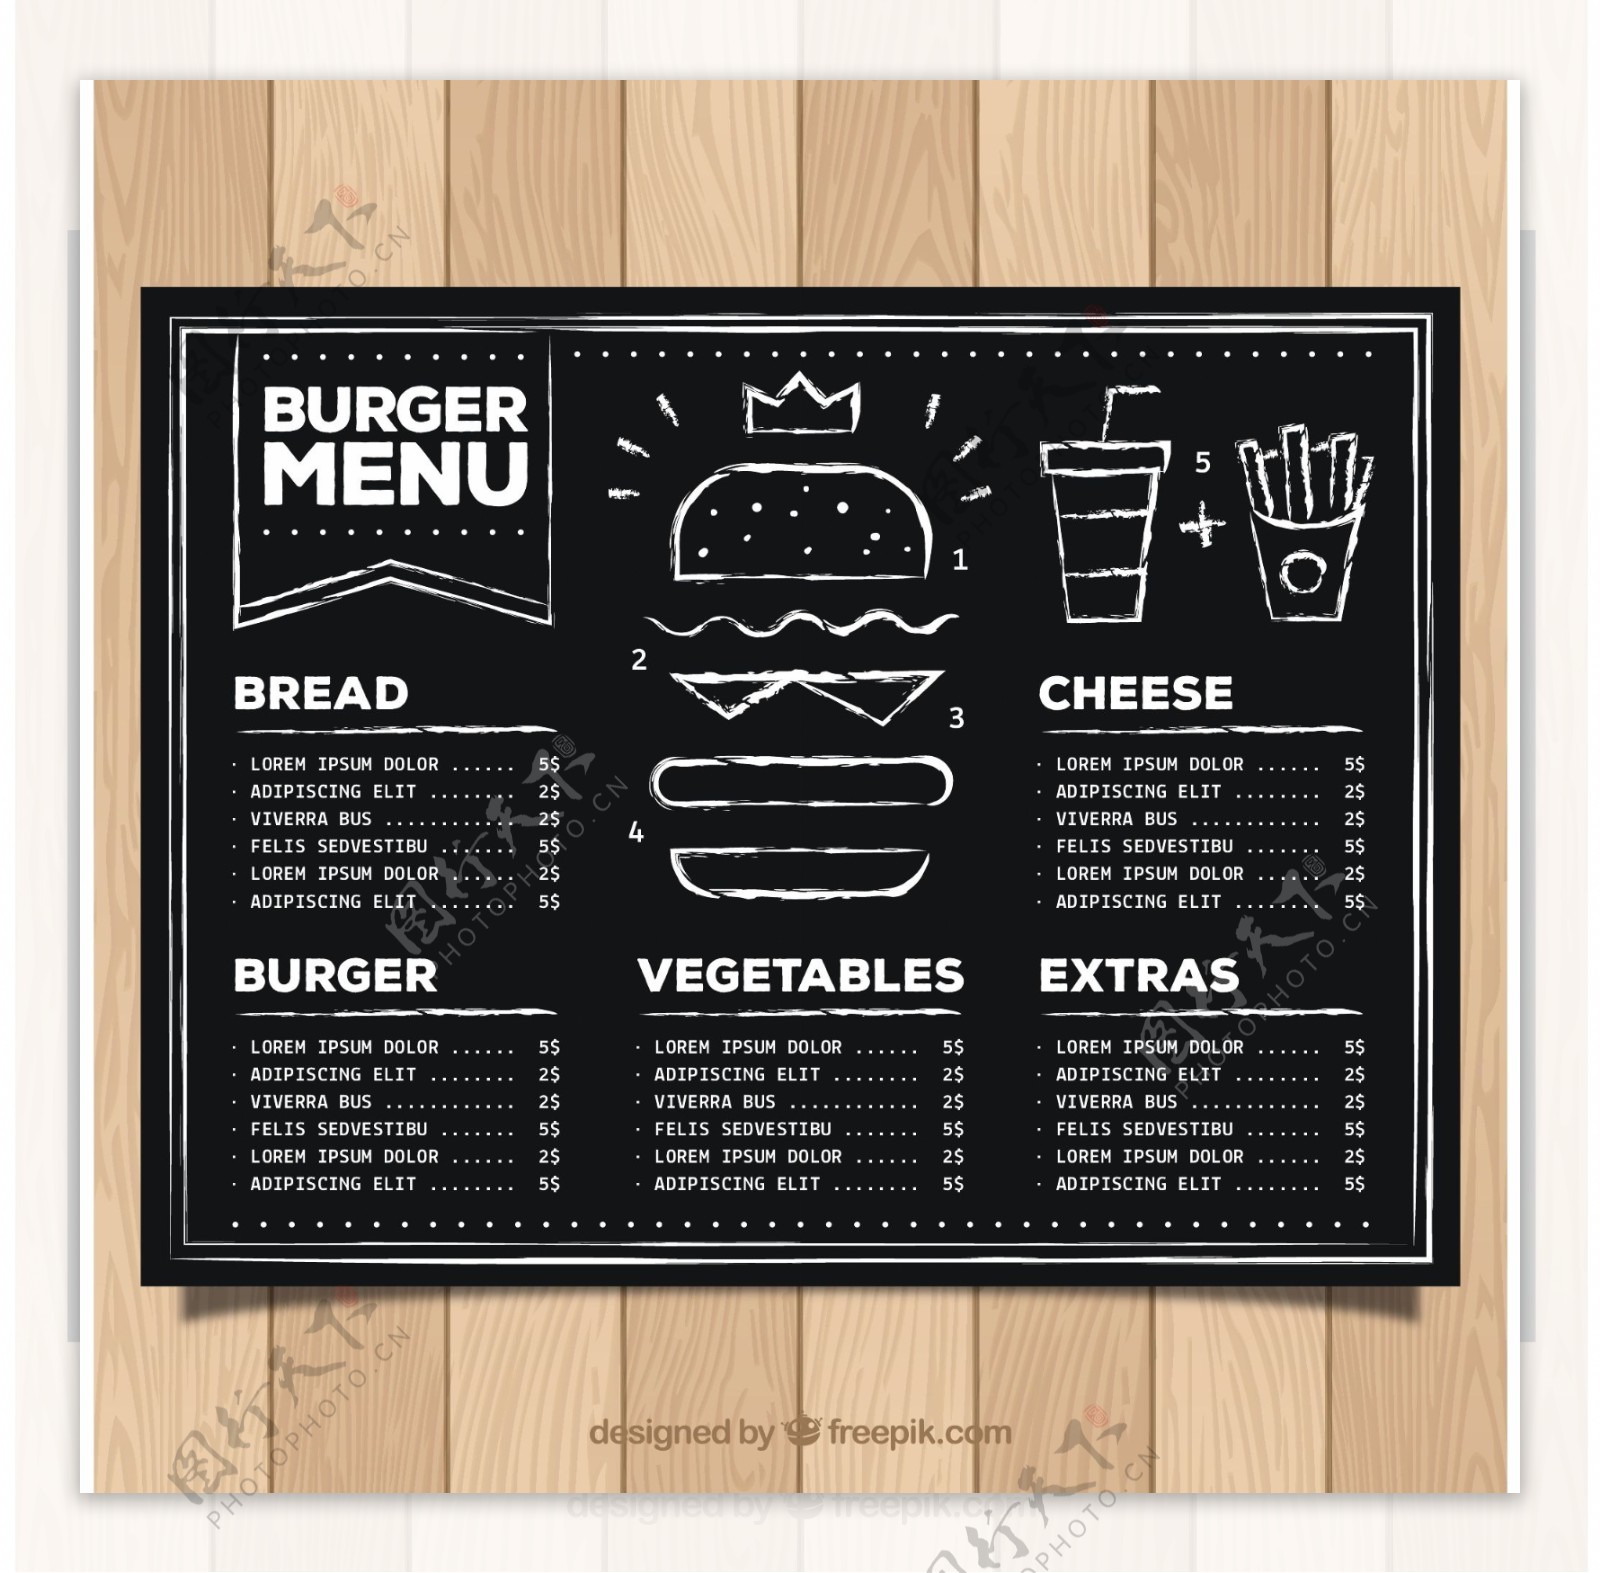 黑板上的汉堡包菜单